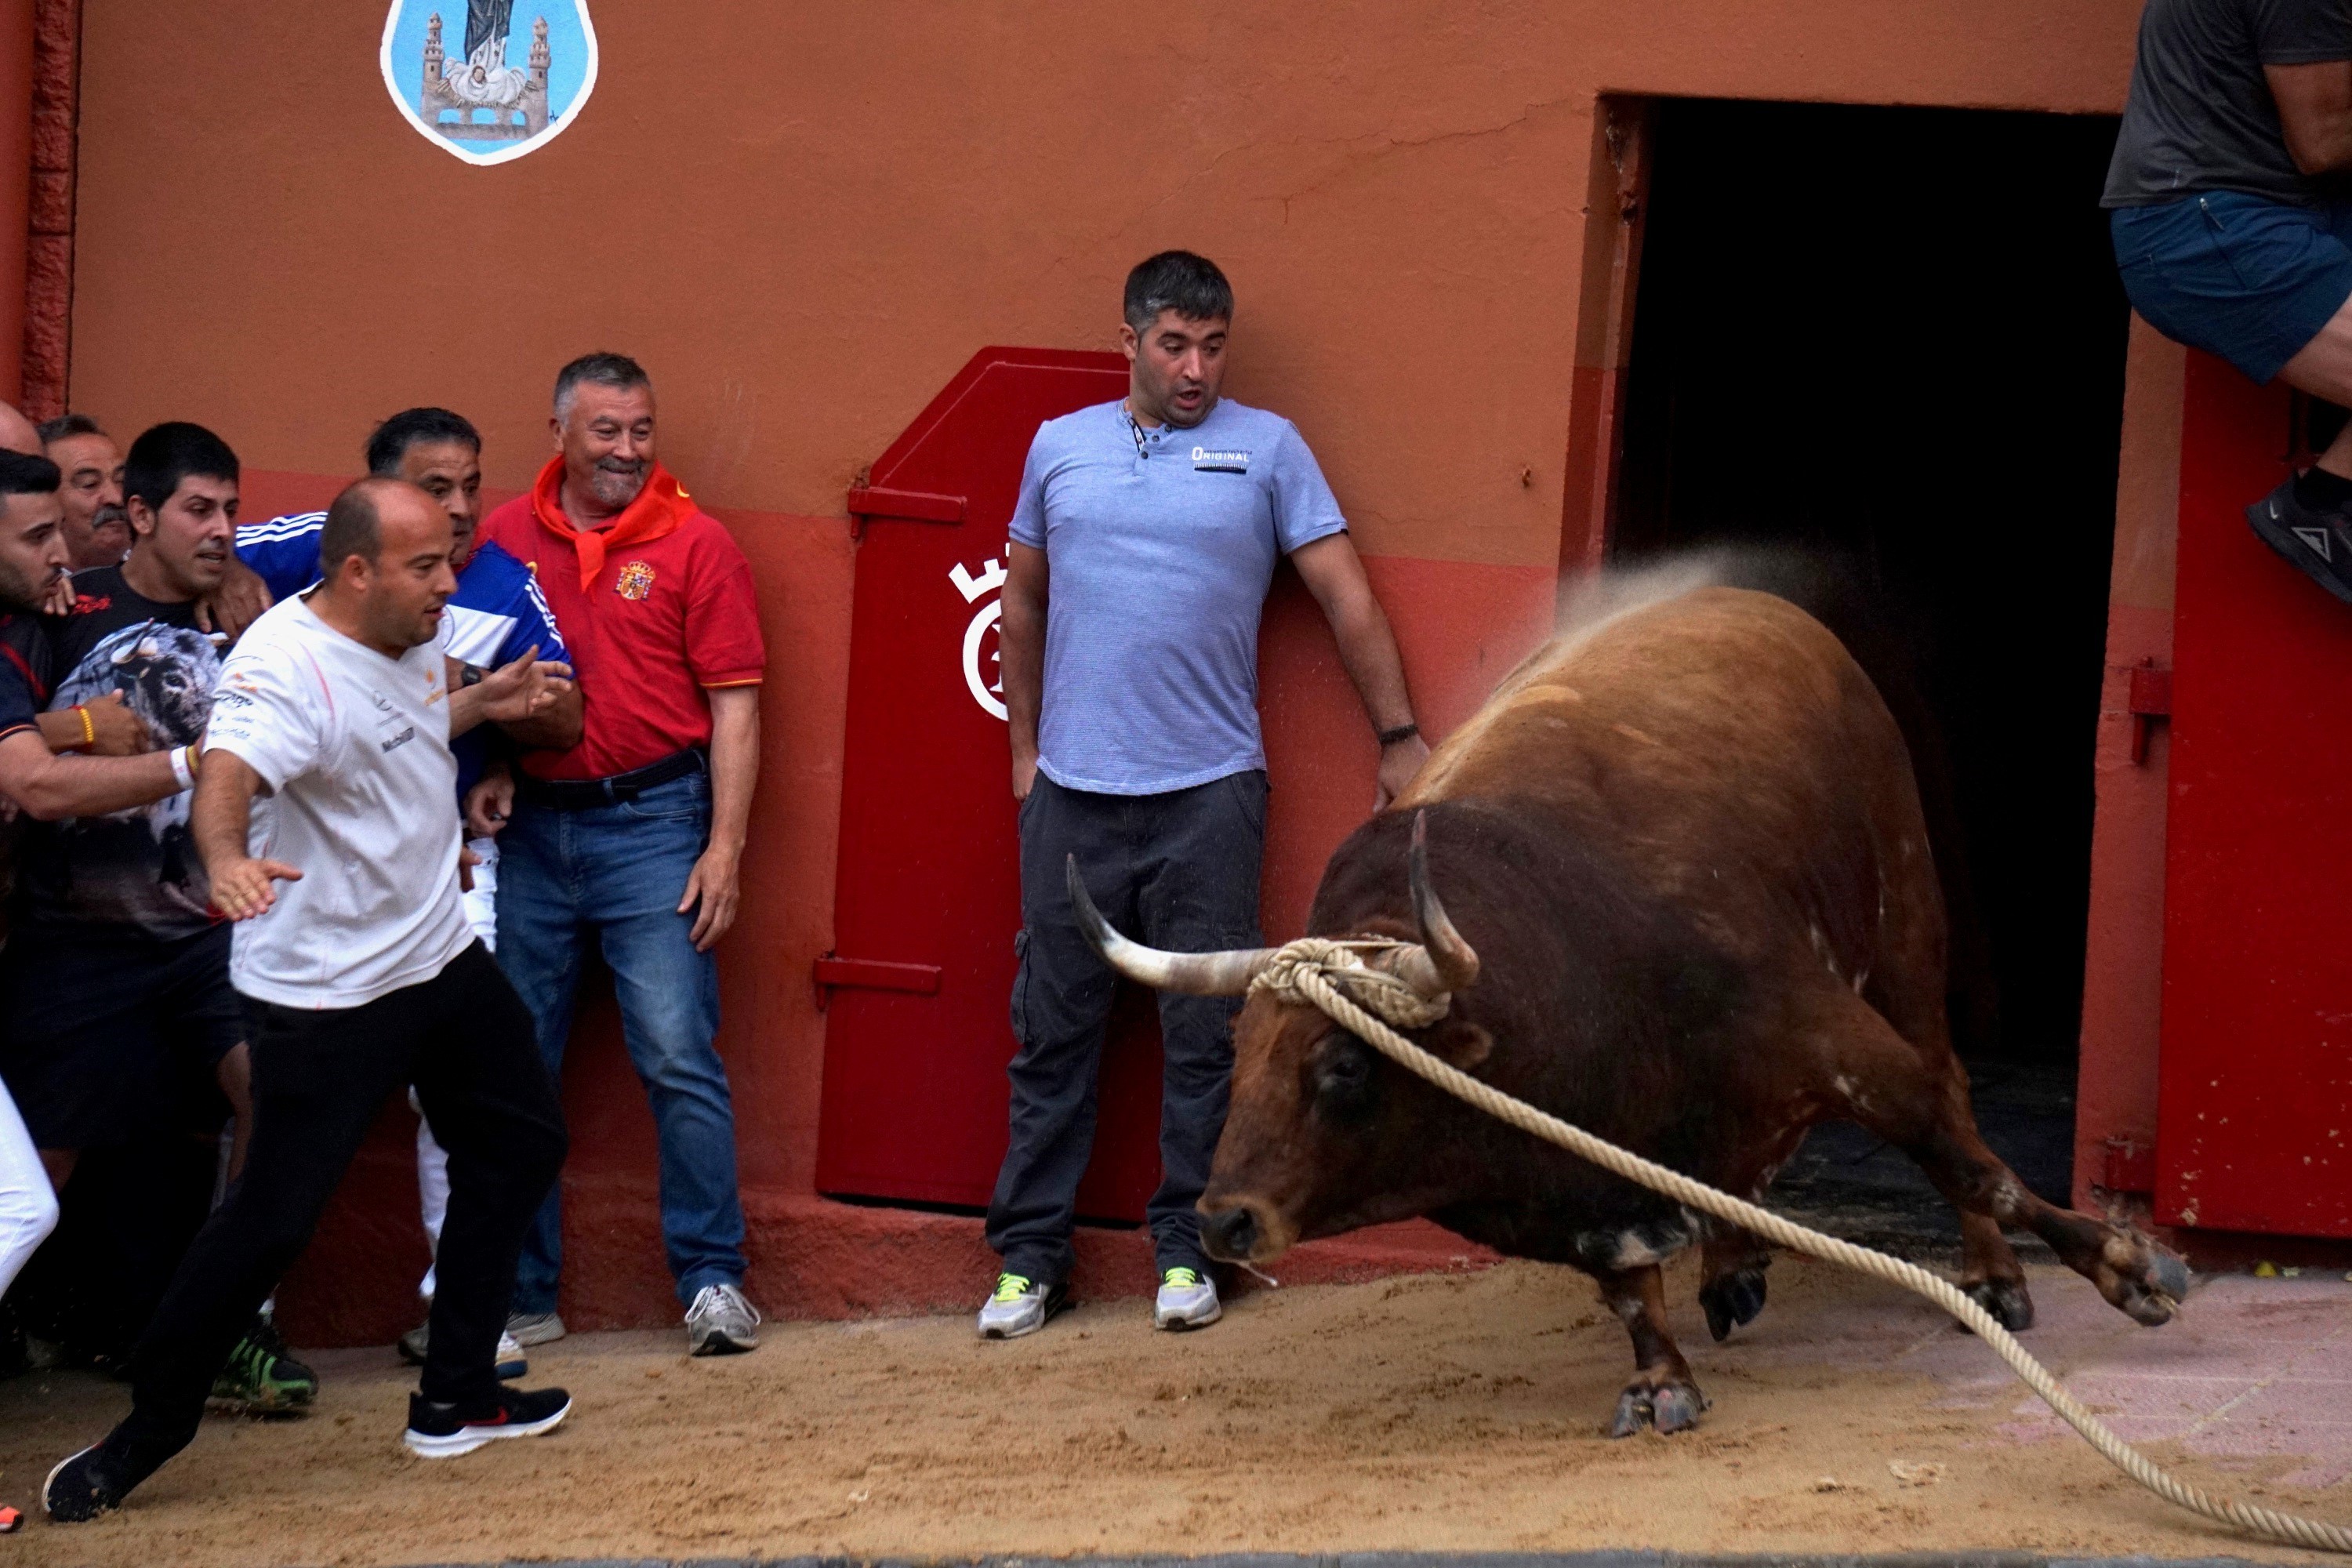 El Toro Enmaromado de Benavente volvi a convocar a miles de aficionados en torno a sus 500 aos de  tradicin